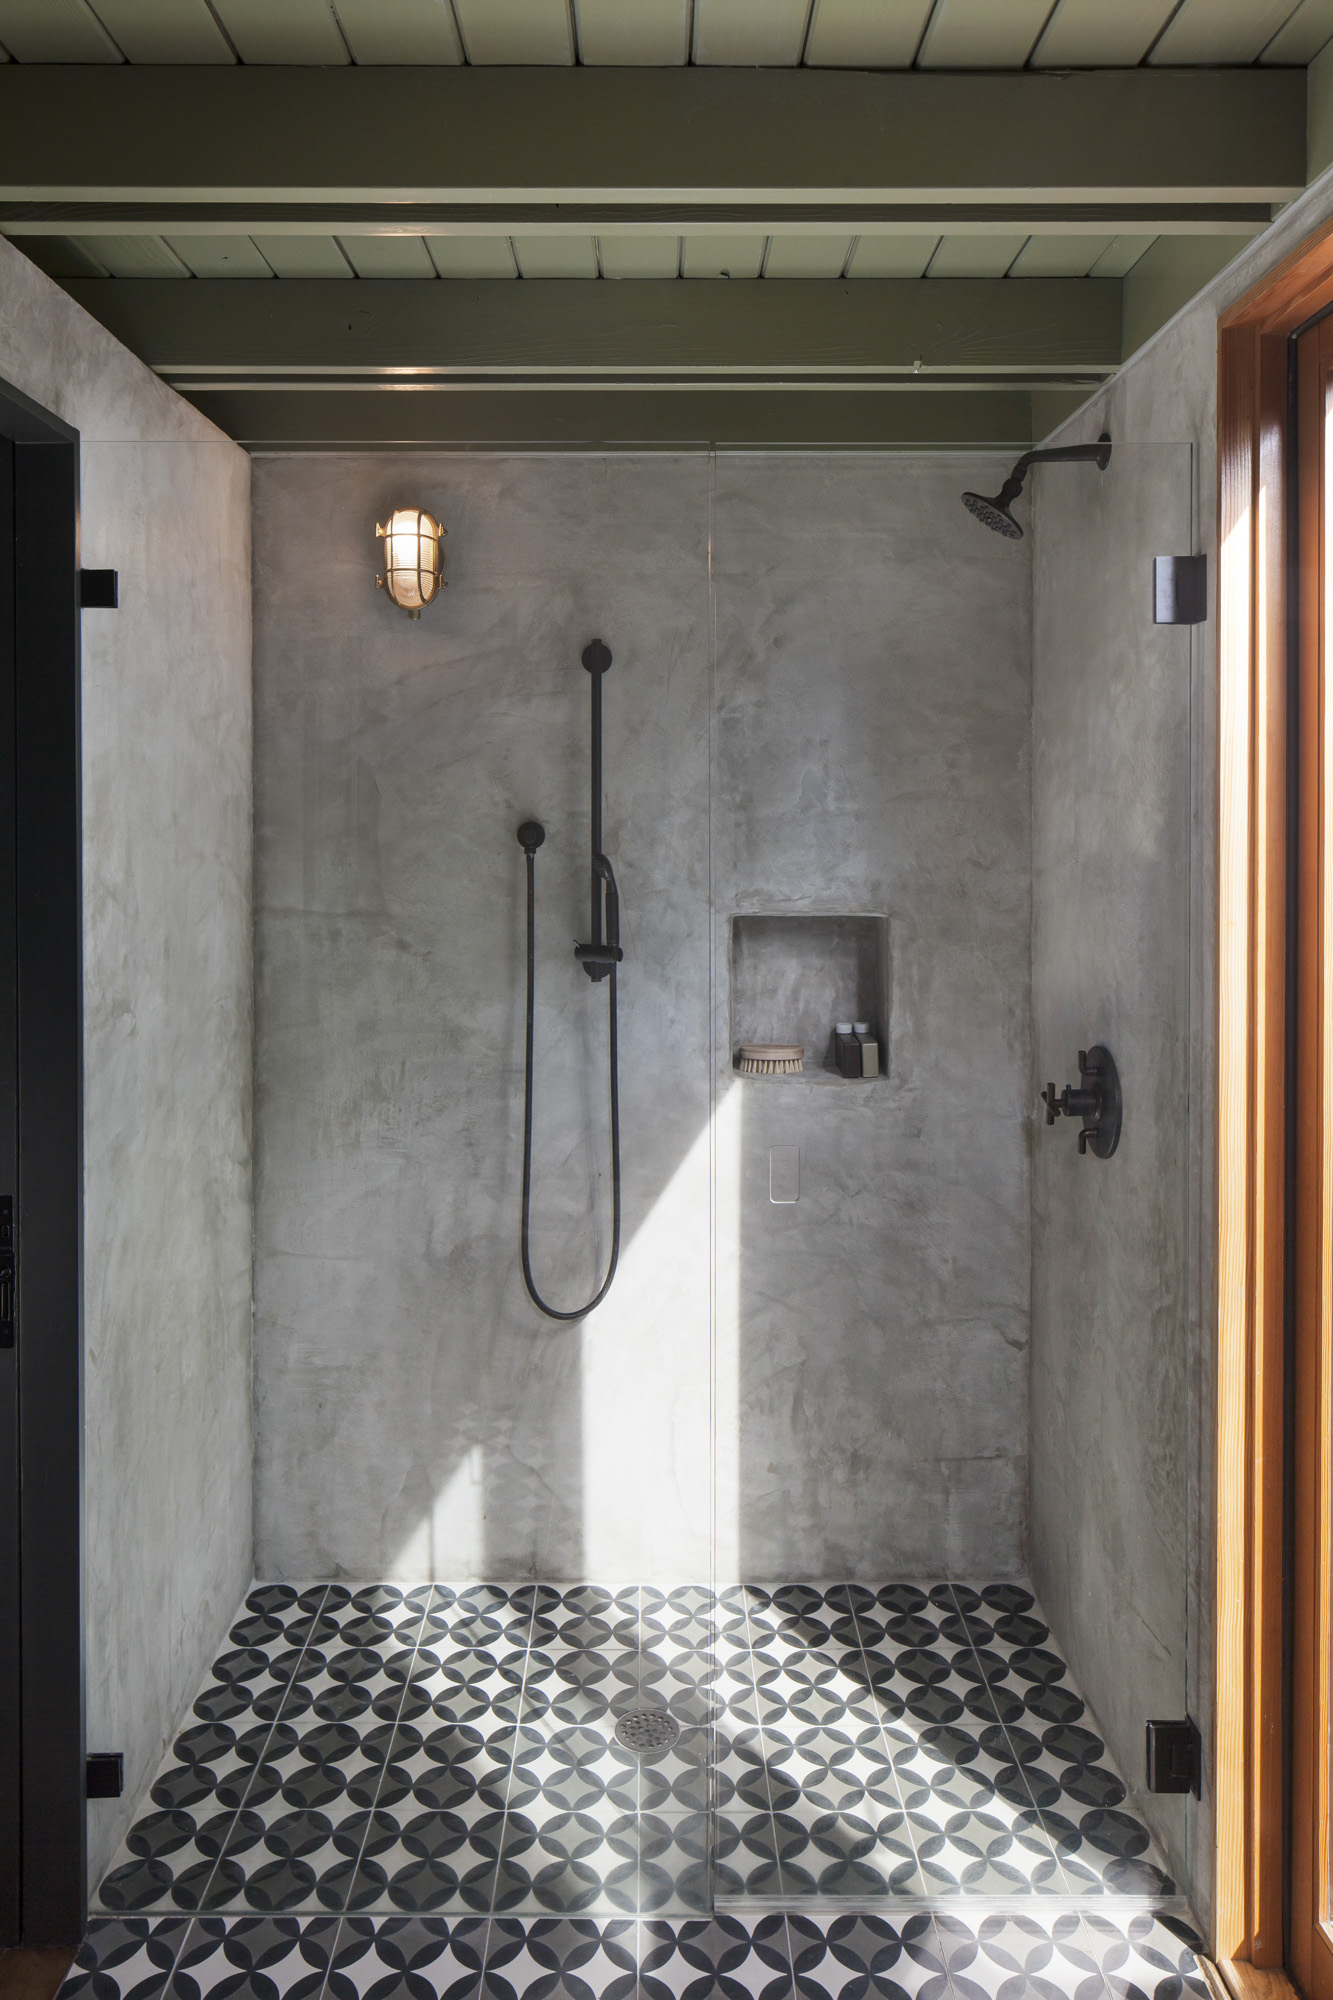 Elizabeth-Baird-Architecture-Garner Pool and Casita- casita bathroom shower.jpg